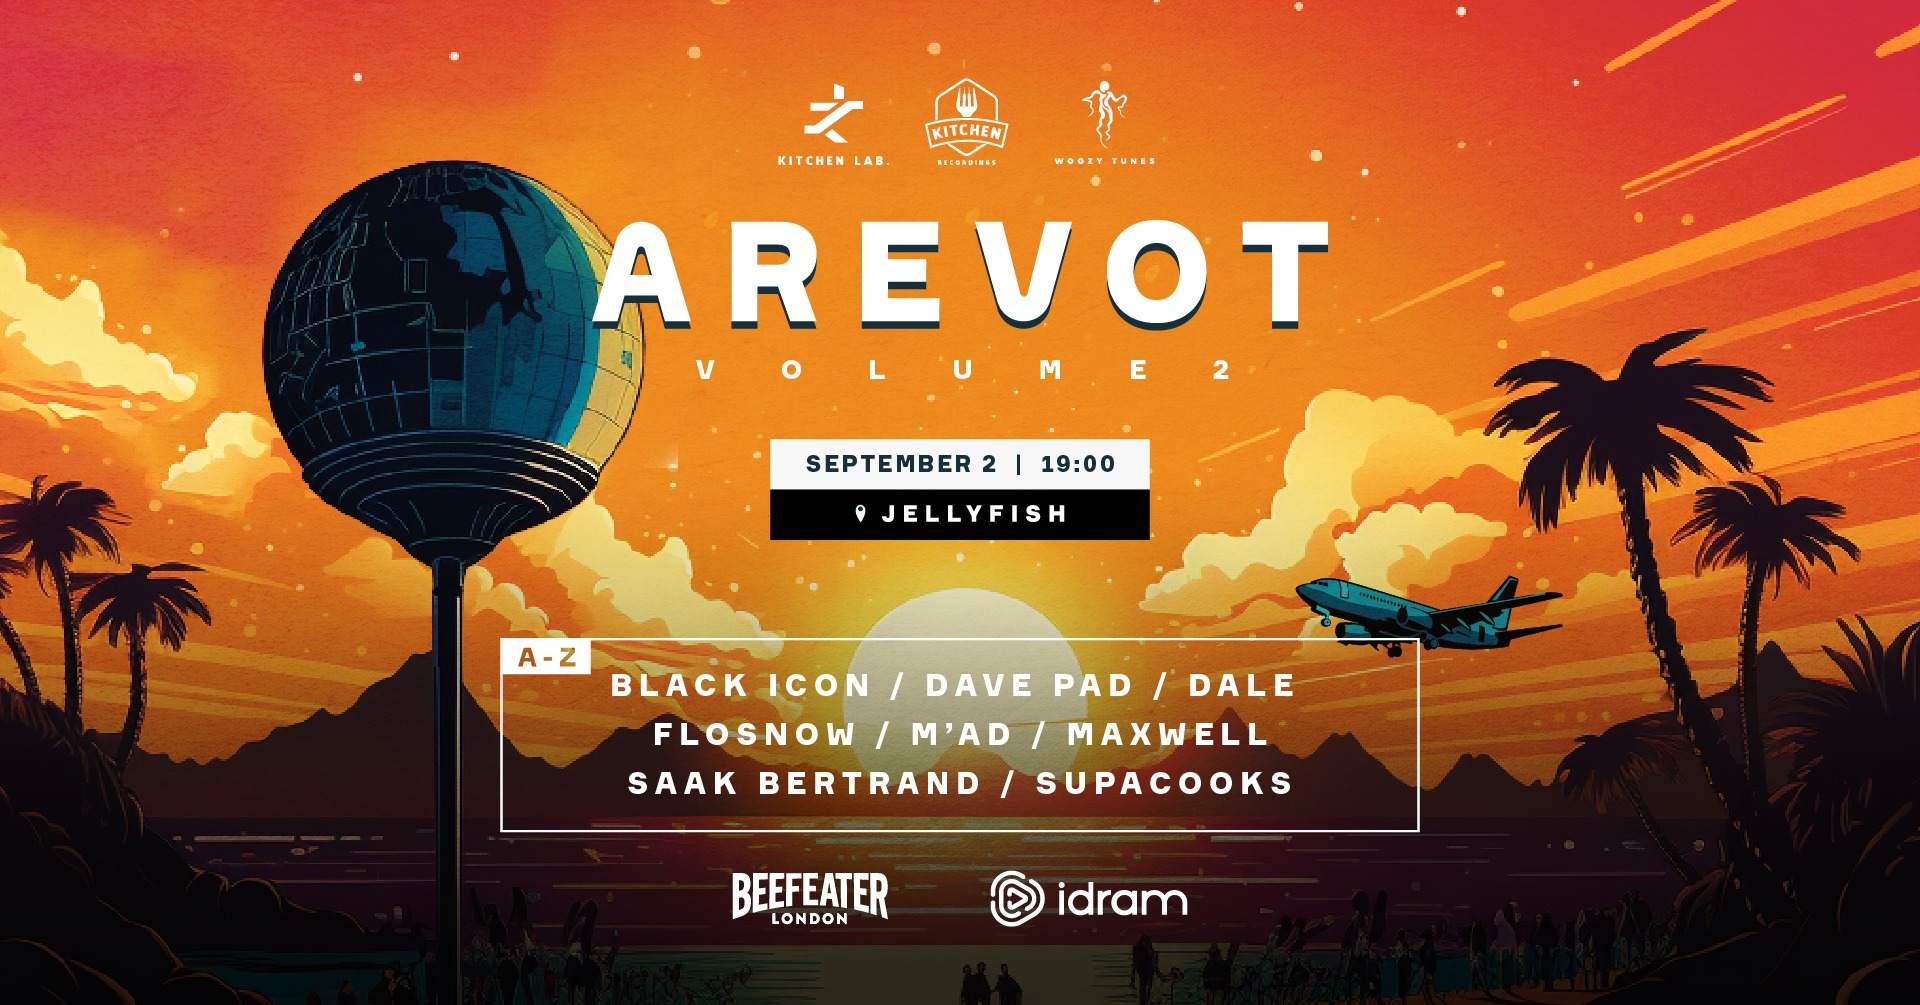 AREVOT volume 2 - フライヤー表